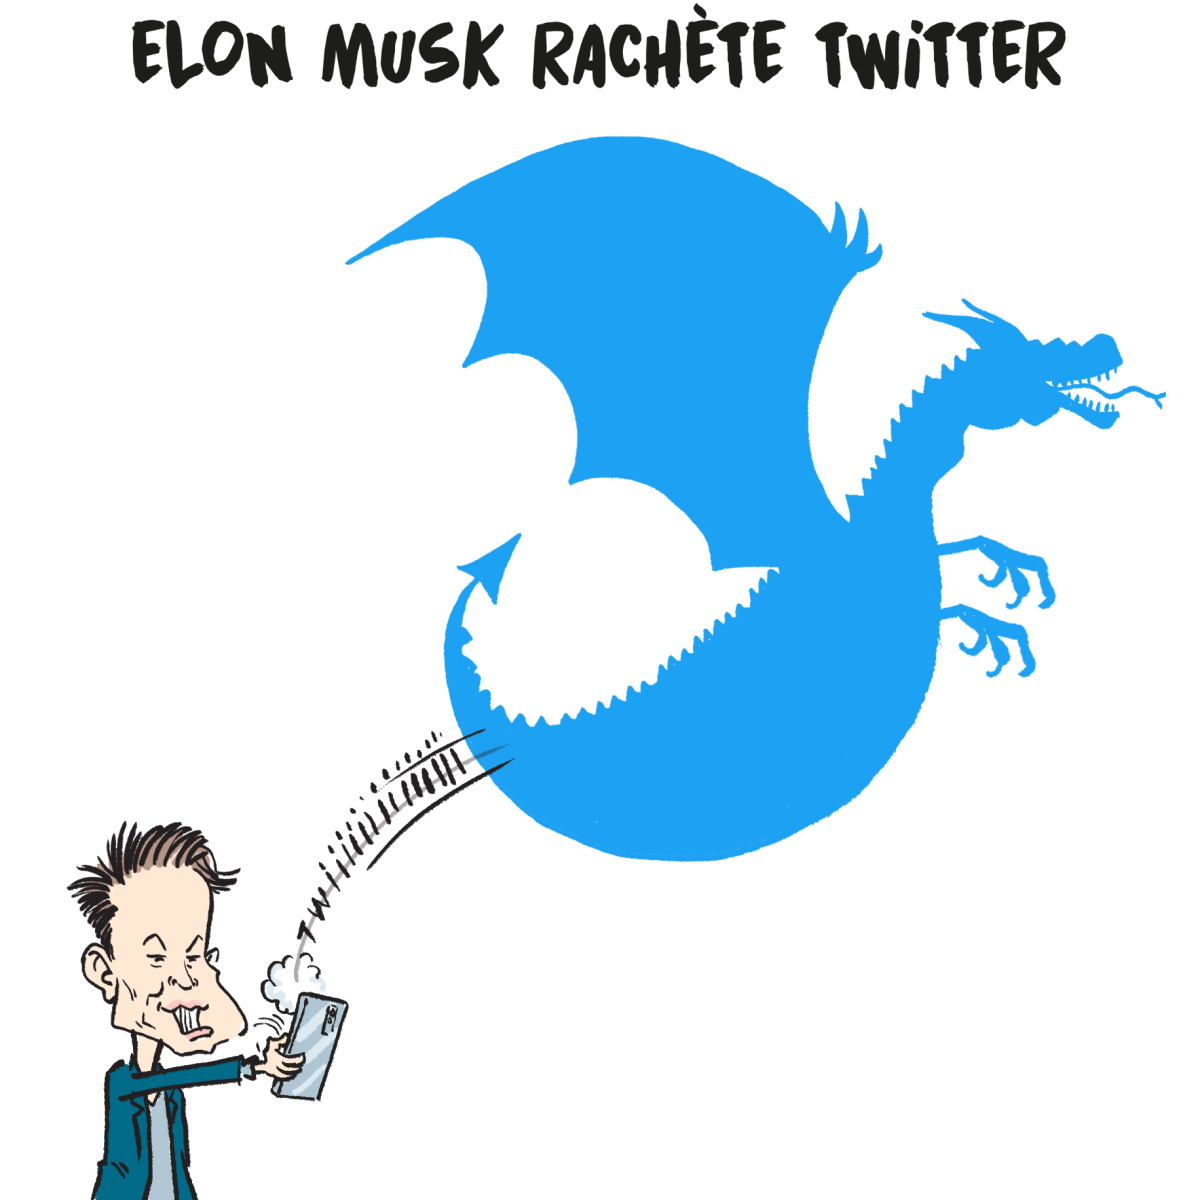 elon-musk-twitter-réseaux-sociaux